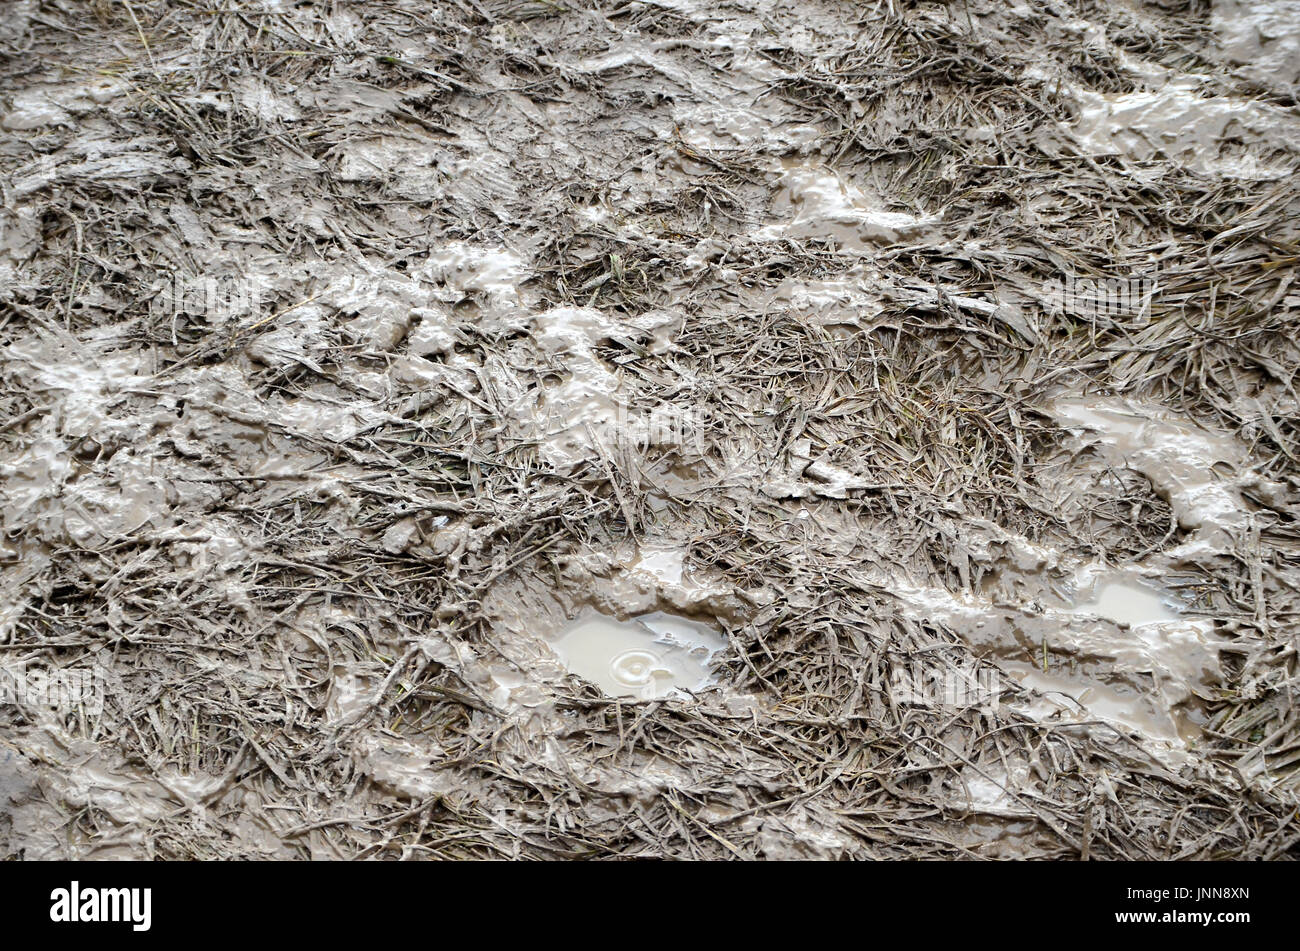 Schlammigen Rasen auf einem Eventbereich, mit Spuren von vielen vielen Füßen. Stockfoto